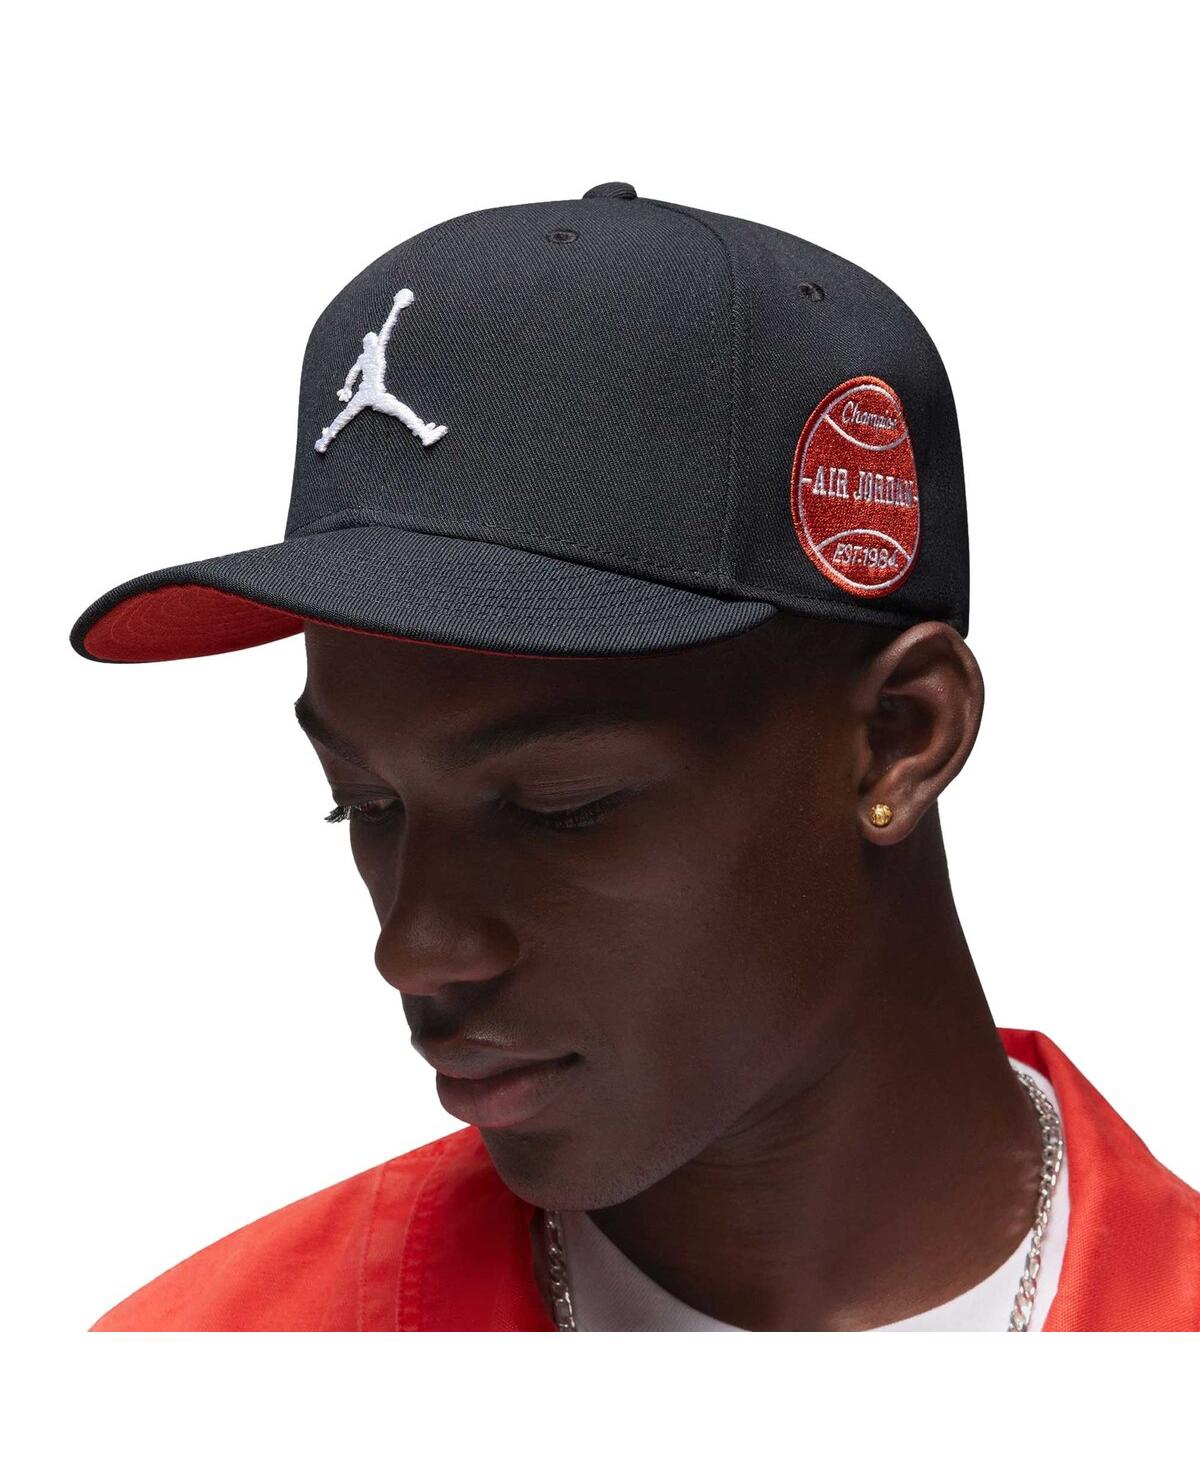 Men's Jordan Black Mvp Pro Snapback Hat - Black